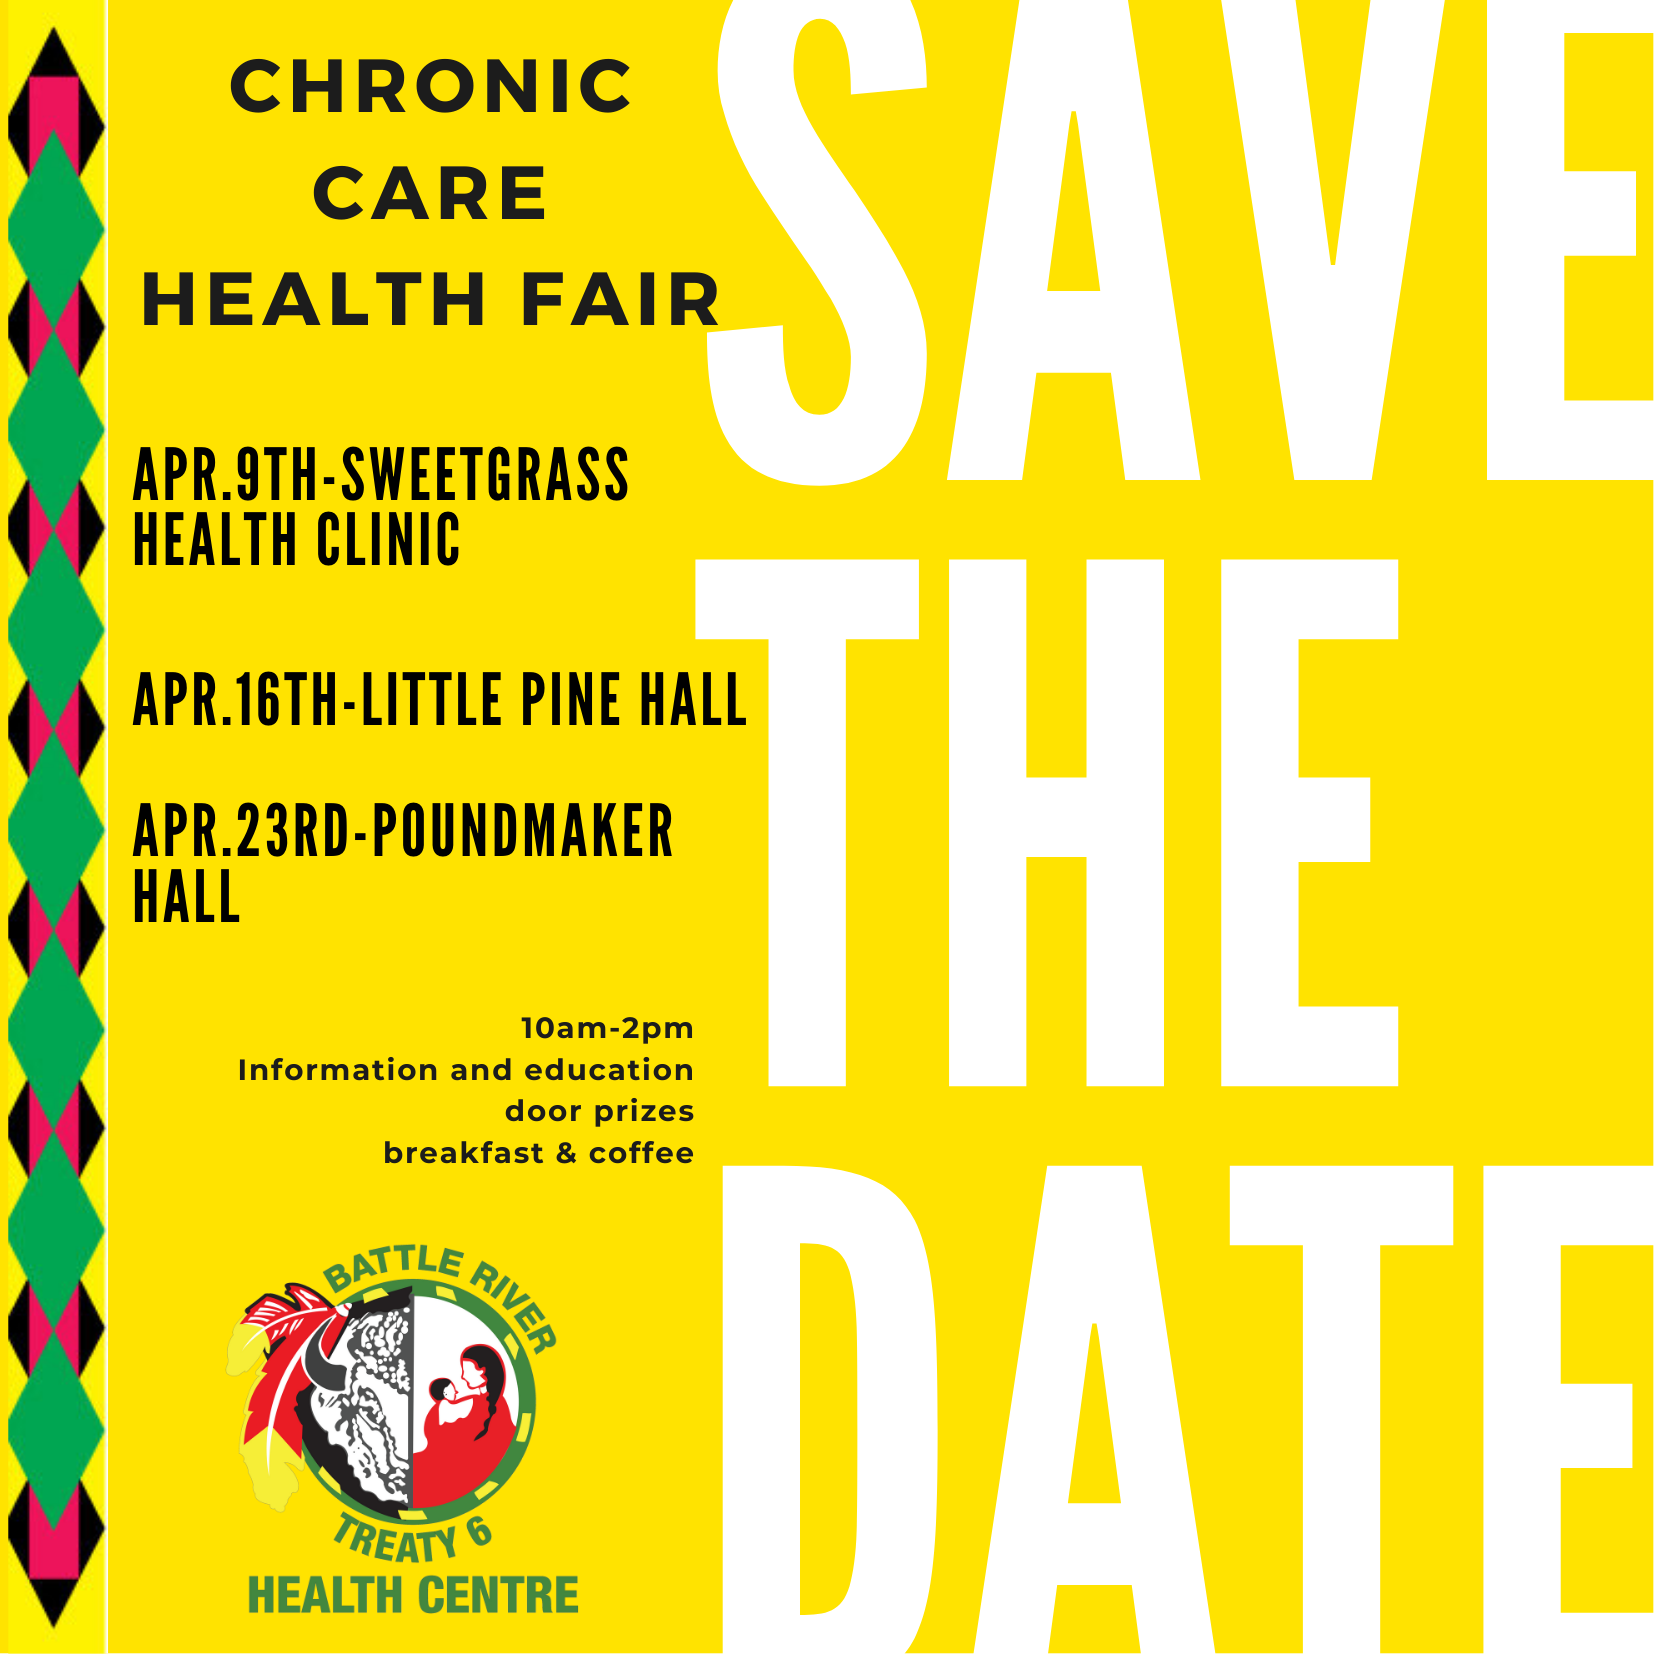 Chronic Health Fair - Save the Date